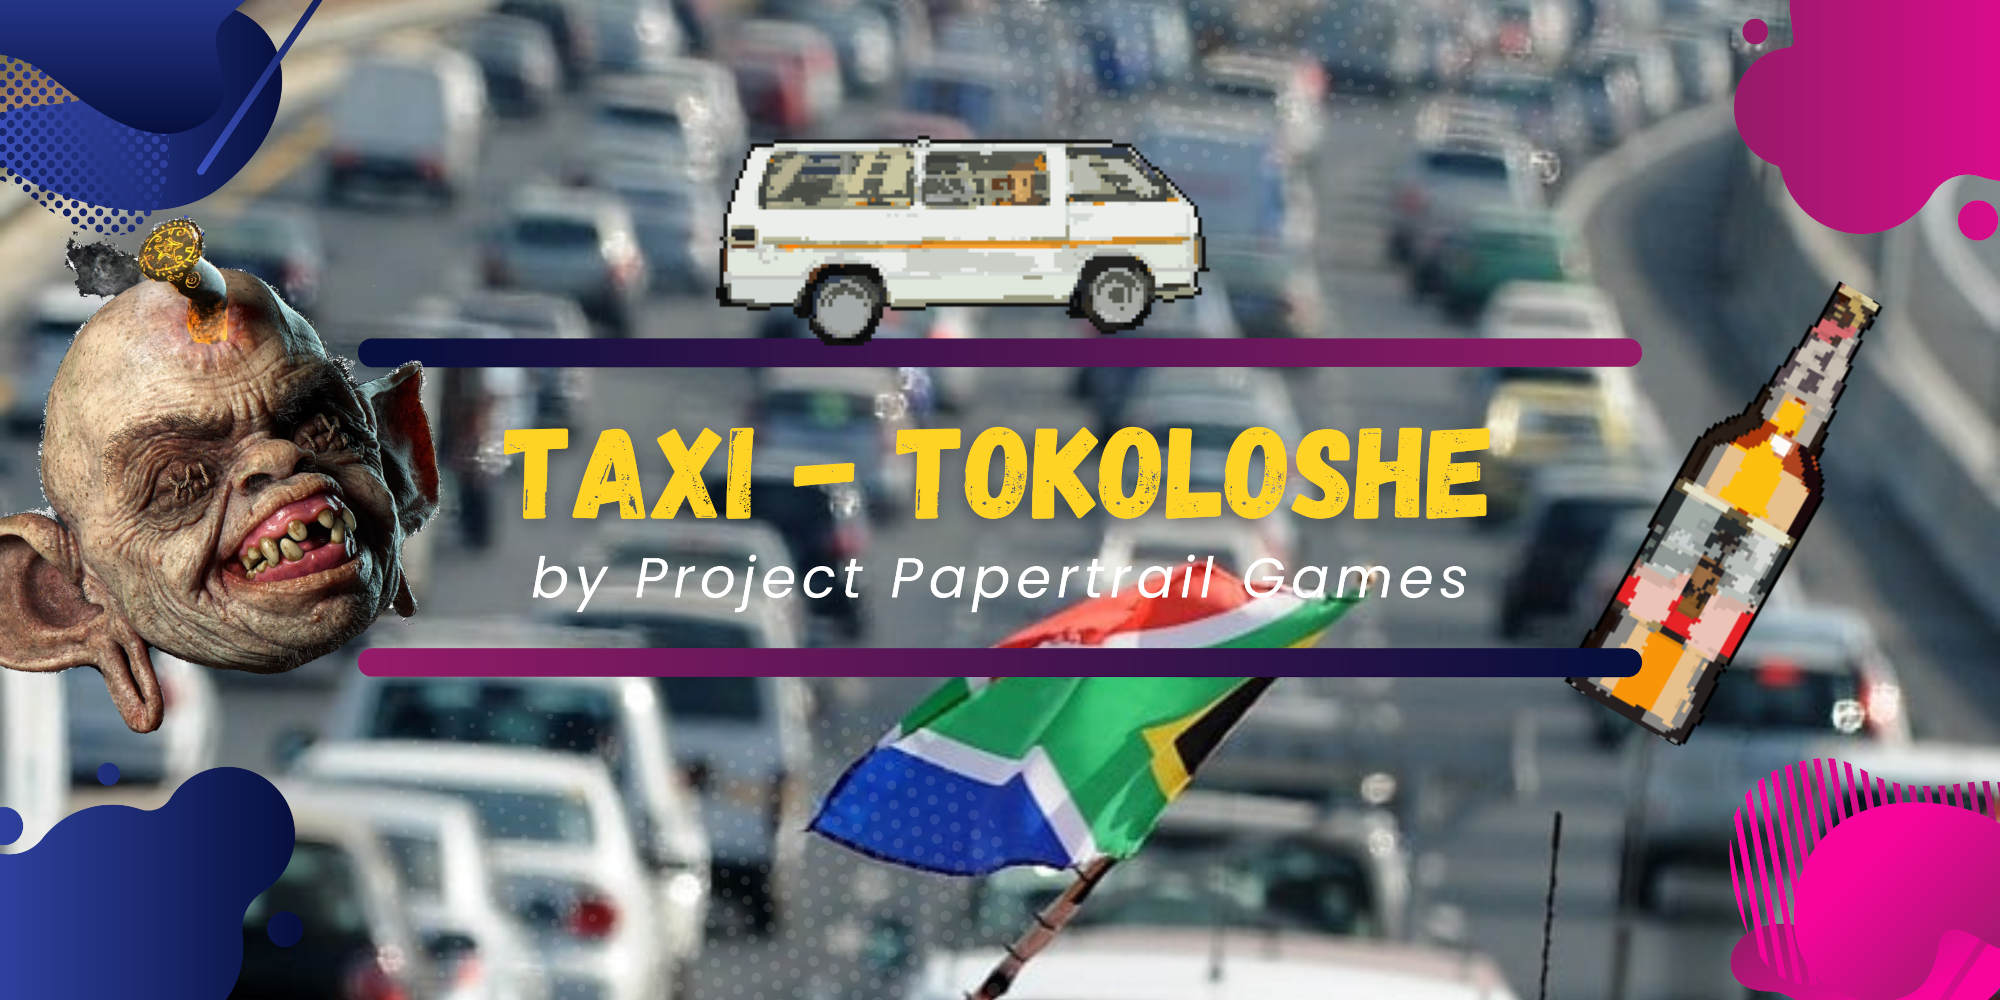 Taxi Tokoloshe